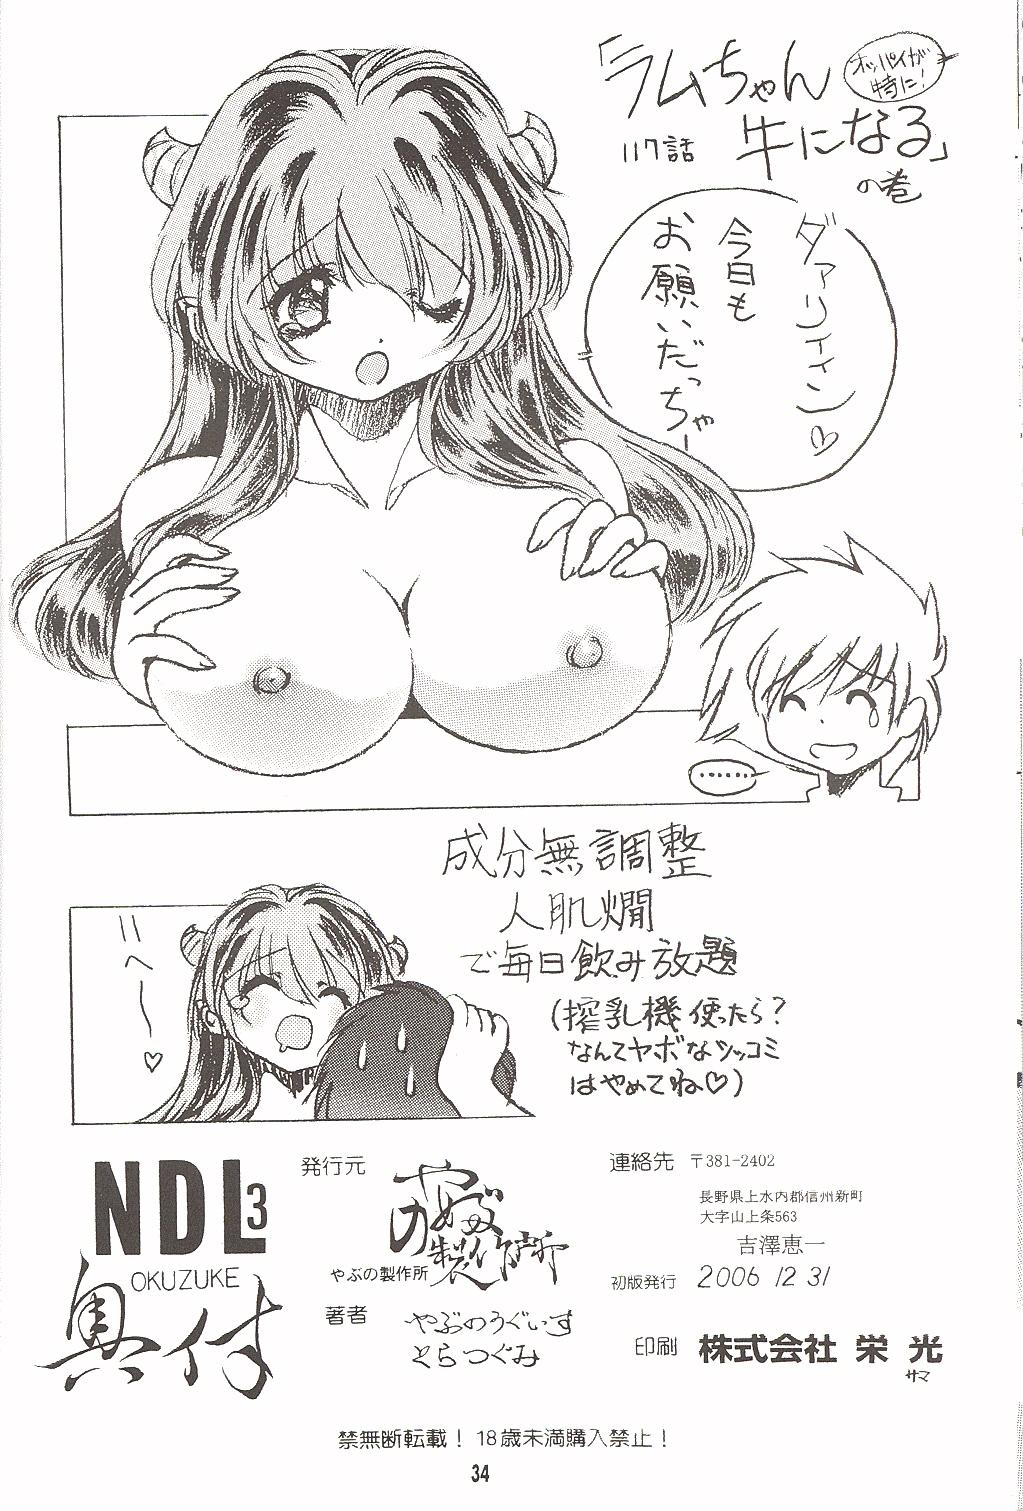 Backshots Naked Dream Lunatic Volume 3 - Urusei yatsura Guys - Page 33